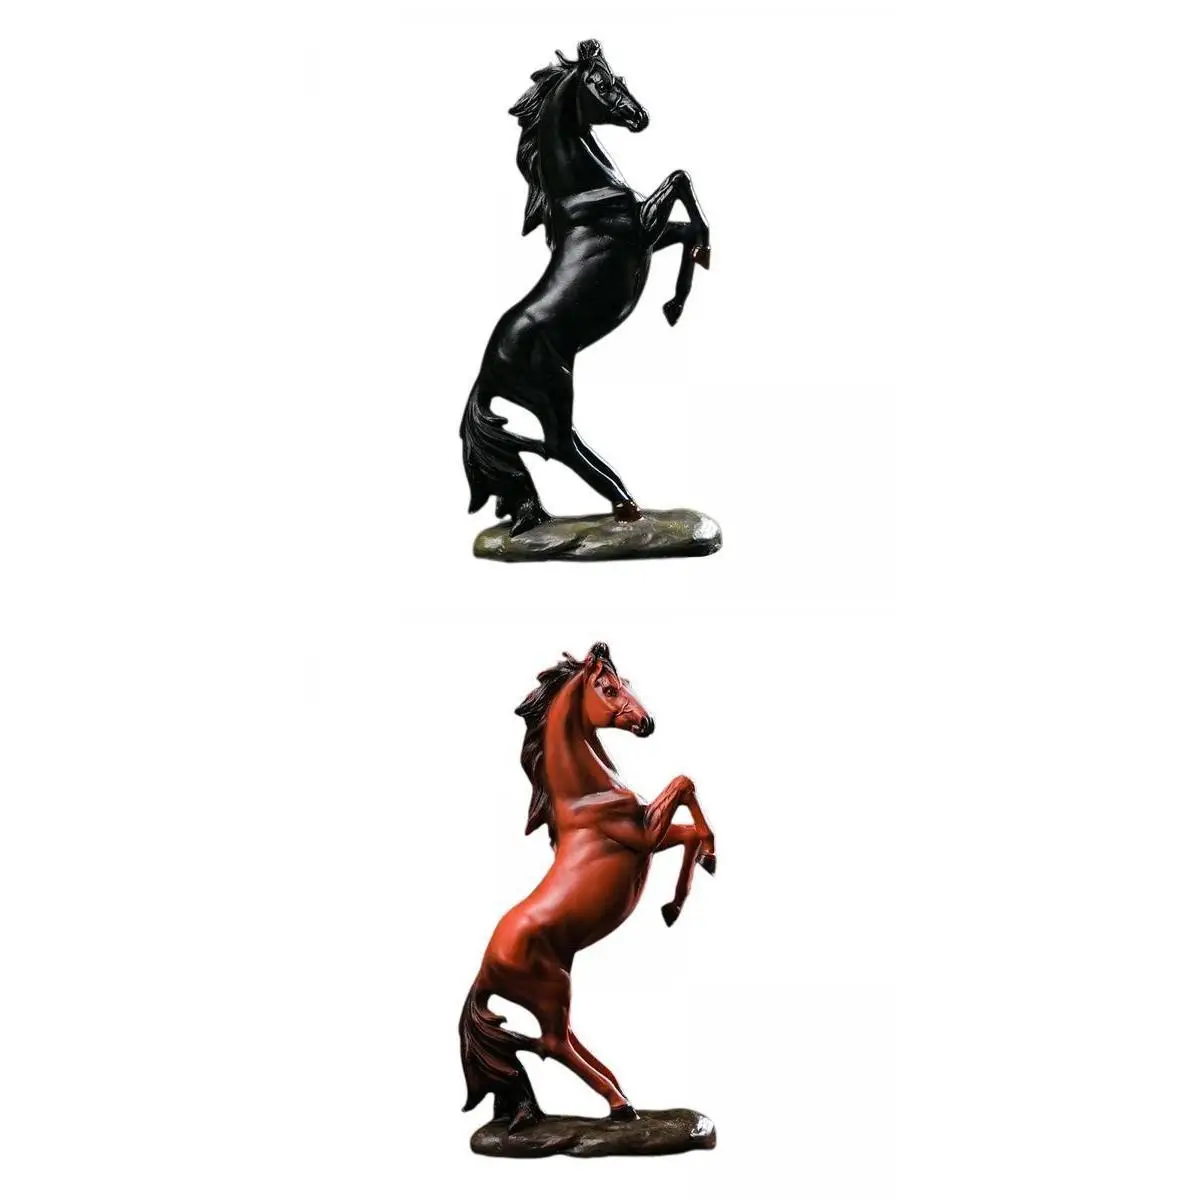 2x Vivid Horses Figurine Desktop Sculpture Shop Bar Ornaments Bookcase Gift